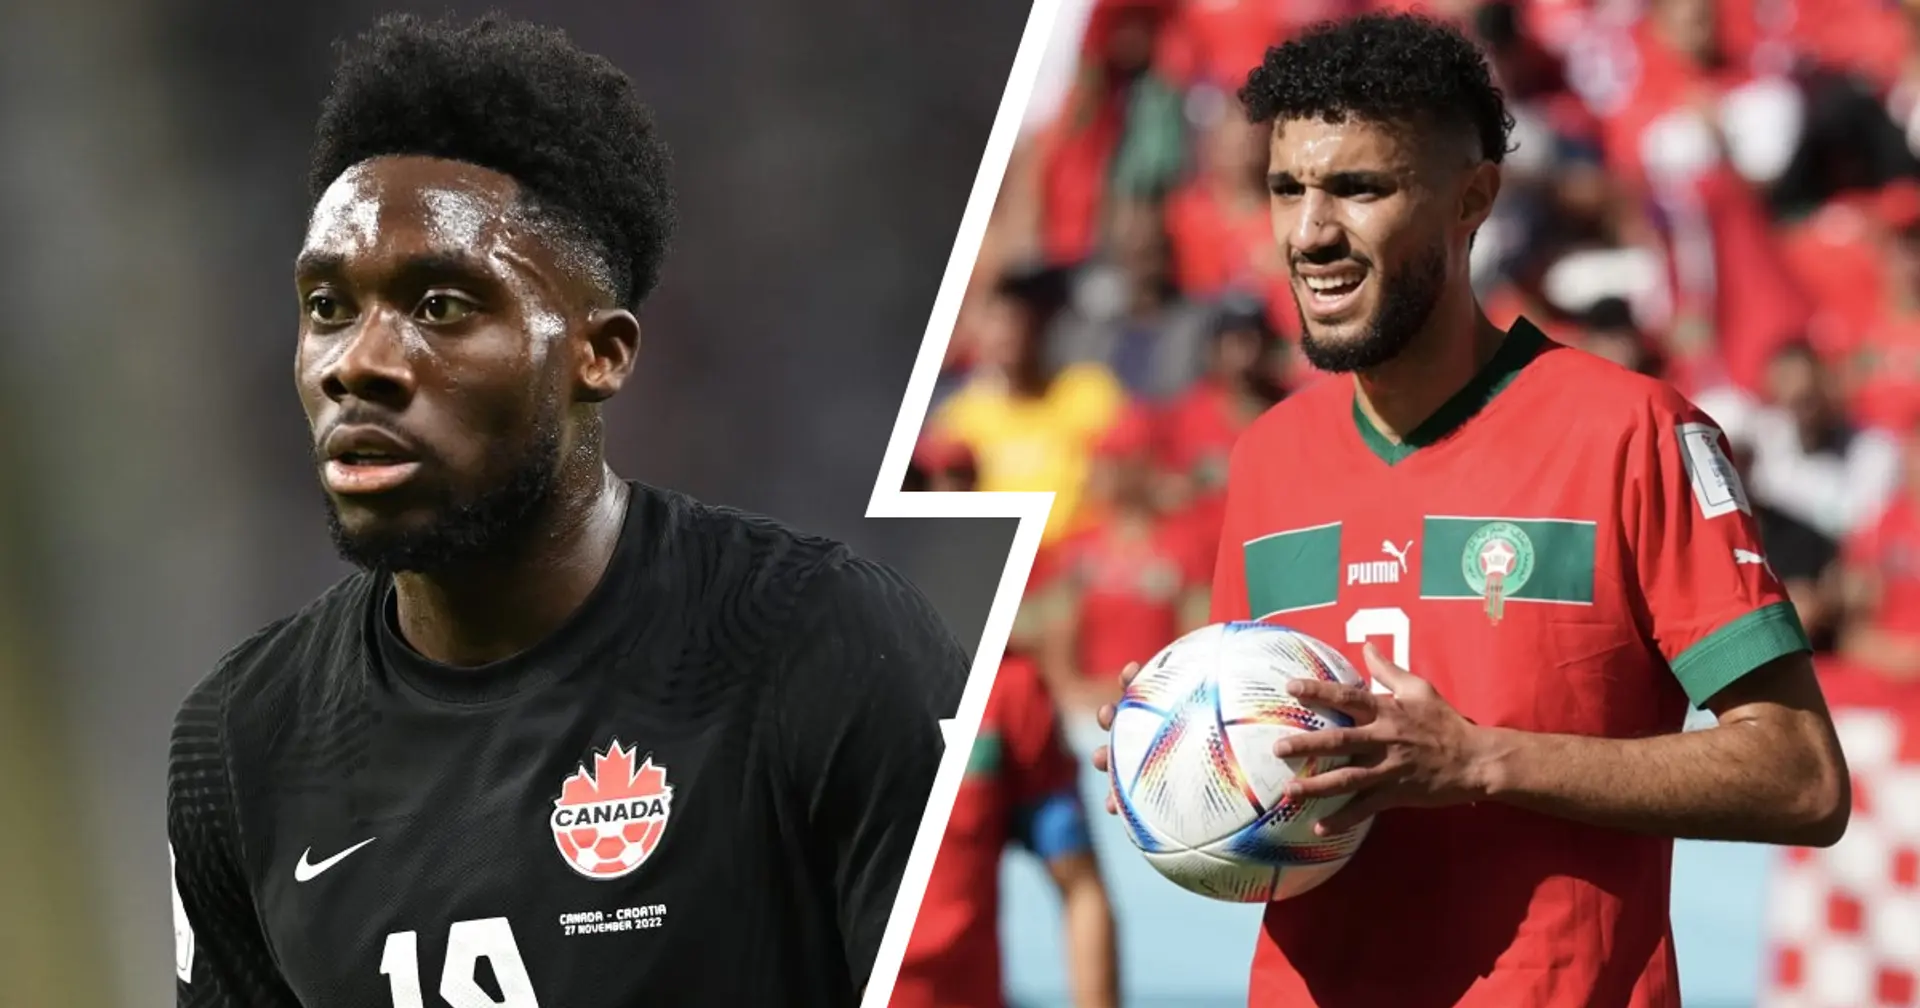 Verzweiflung für Davies, pure Freude für Mazraoui: Marokko schlägt Kanada und sichert sich den Platz im WM-Achtelfinale!